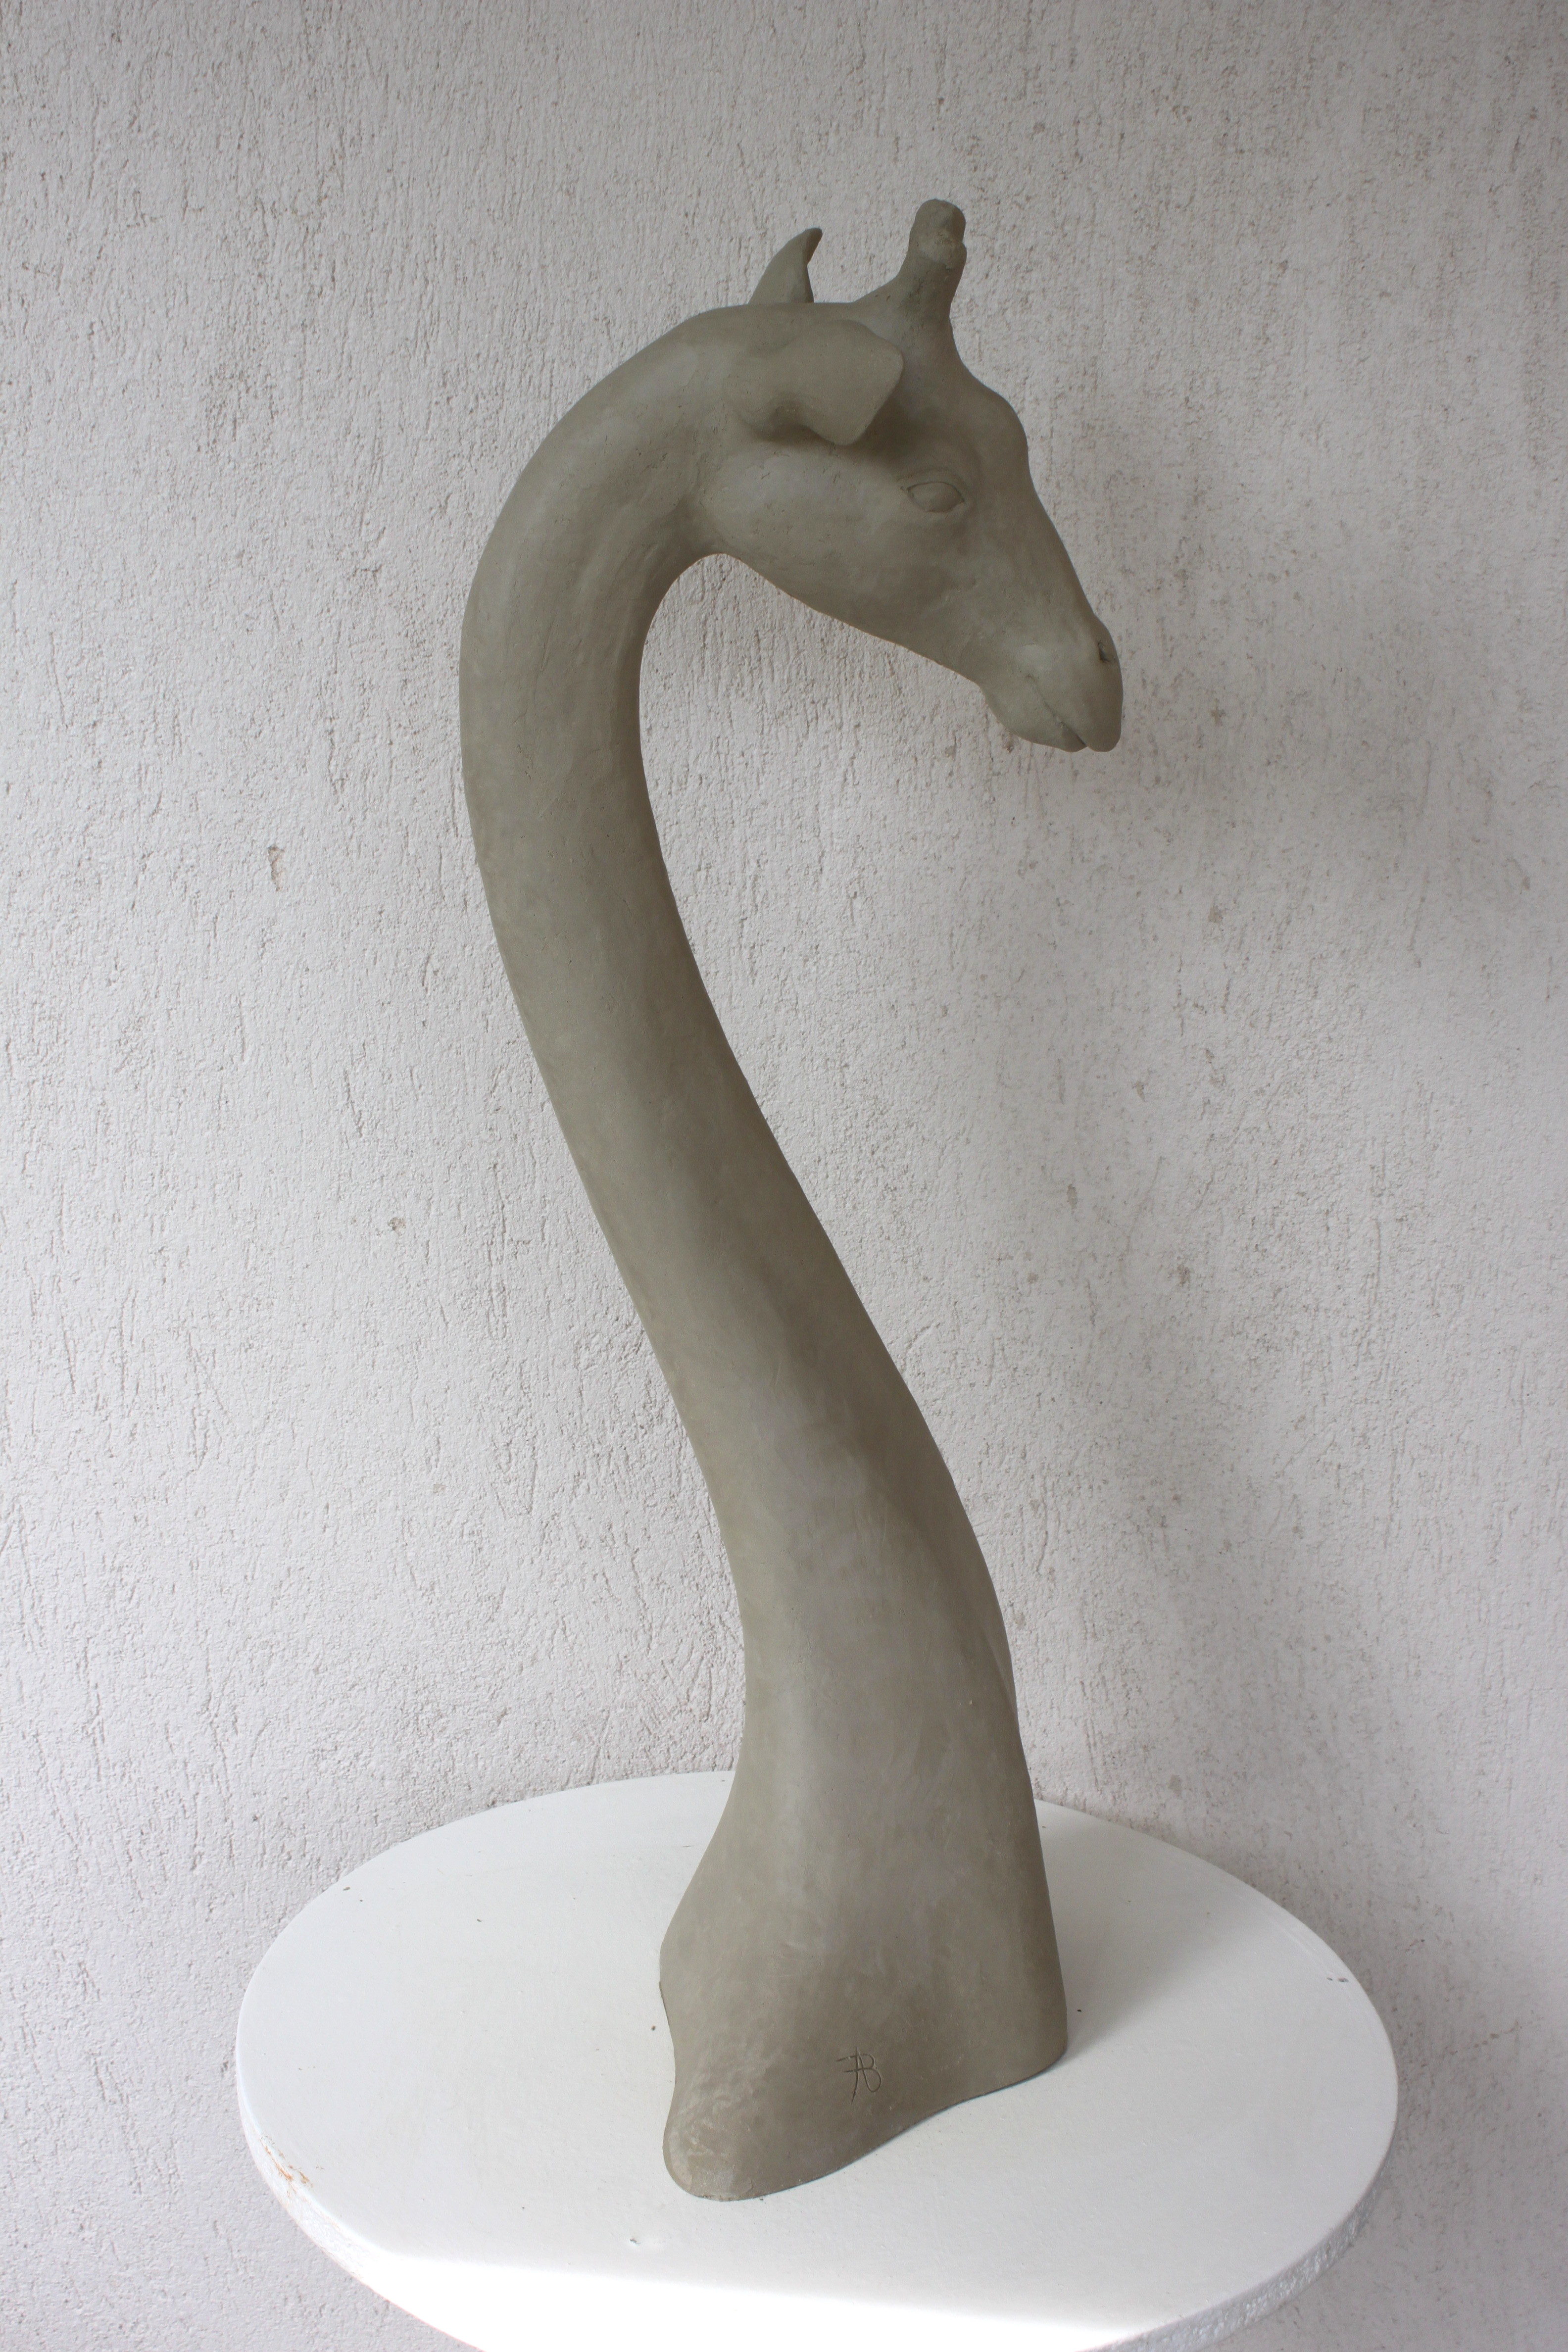 Sculpture d'artiste à vendre / achat / commande à Paris / France / Lille, en terre cuite / faîence / grès cérame, d'une girafe